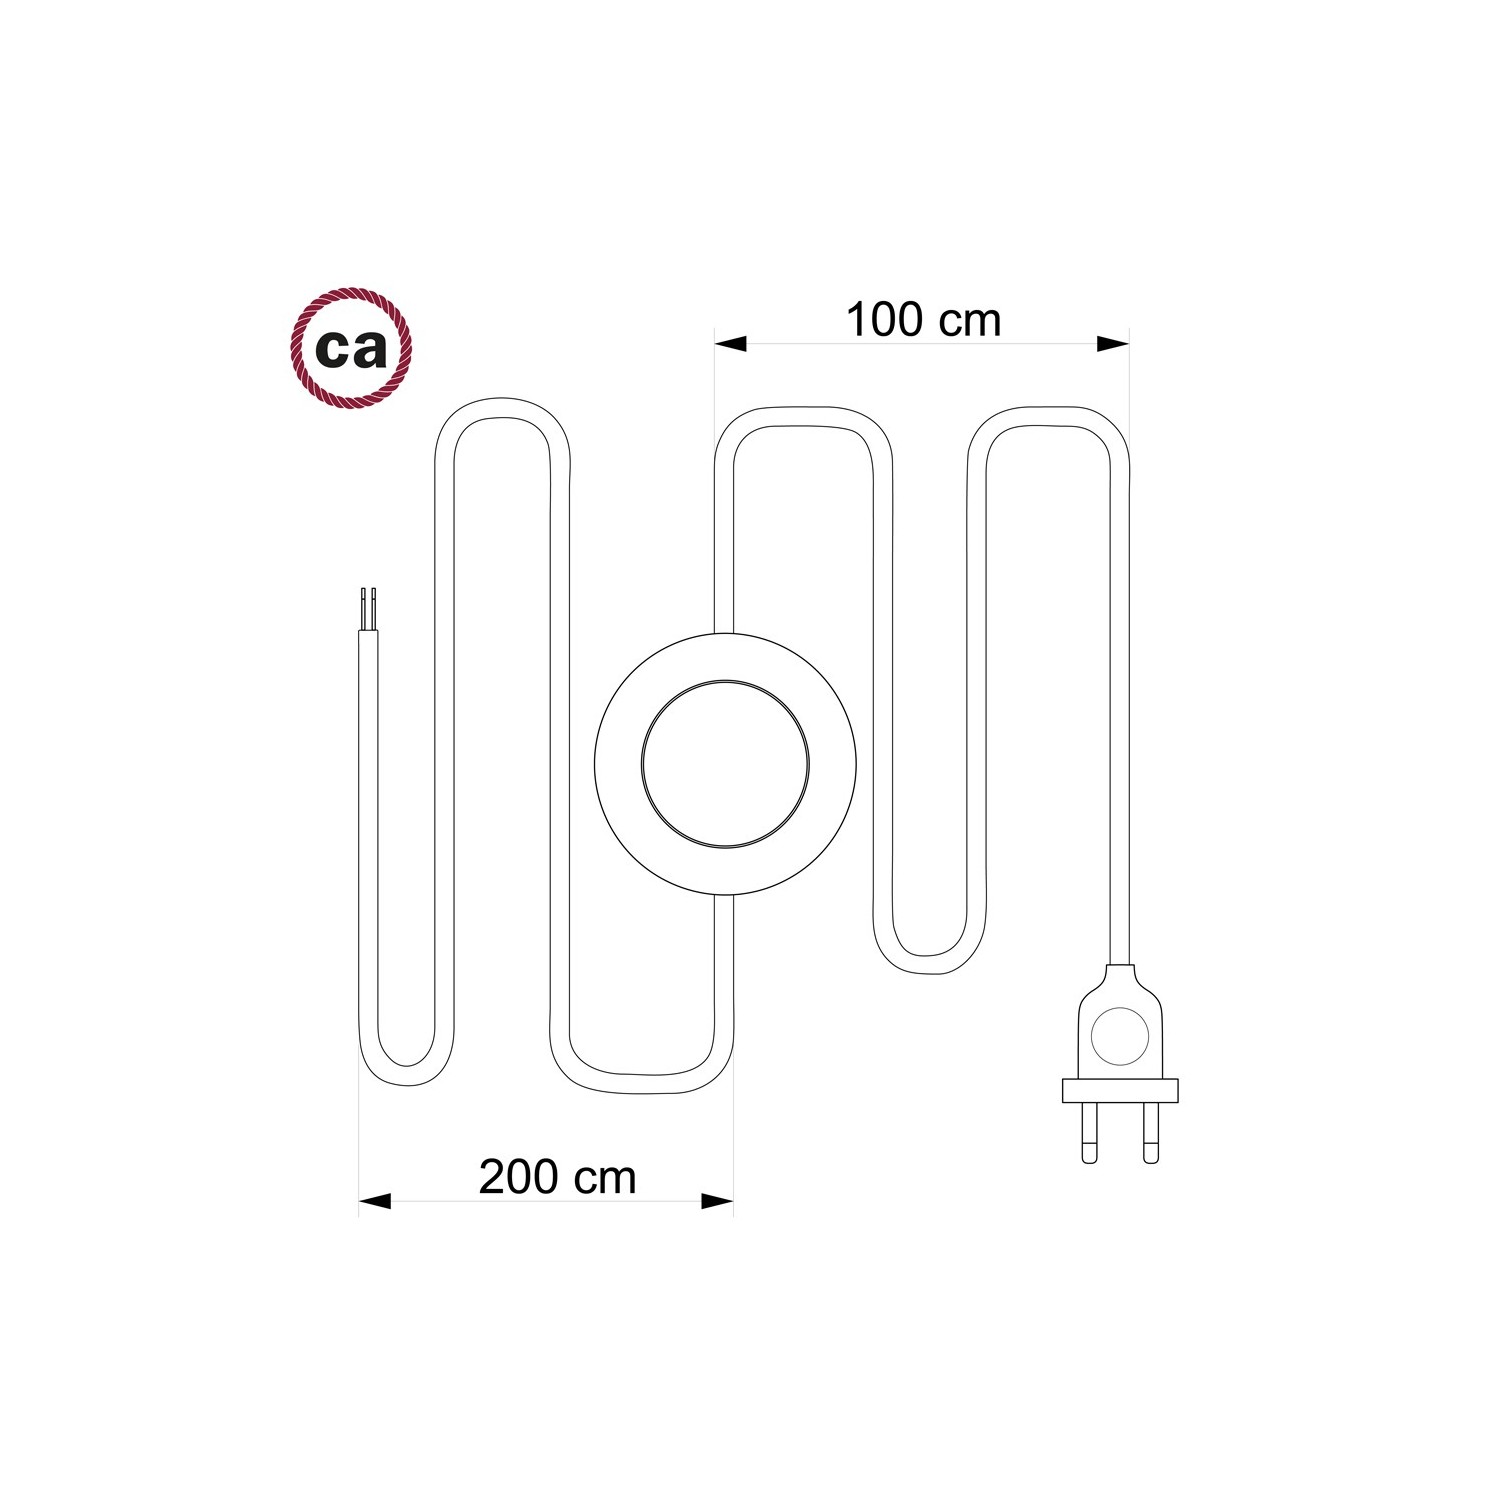 Cordon pour lampadaire, câble RM08 Effet Soie Fuchsia 3 m. Choisissez la couleur de la fiche et de l'interrupteur!